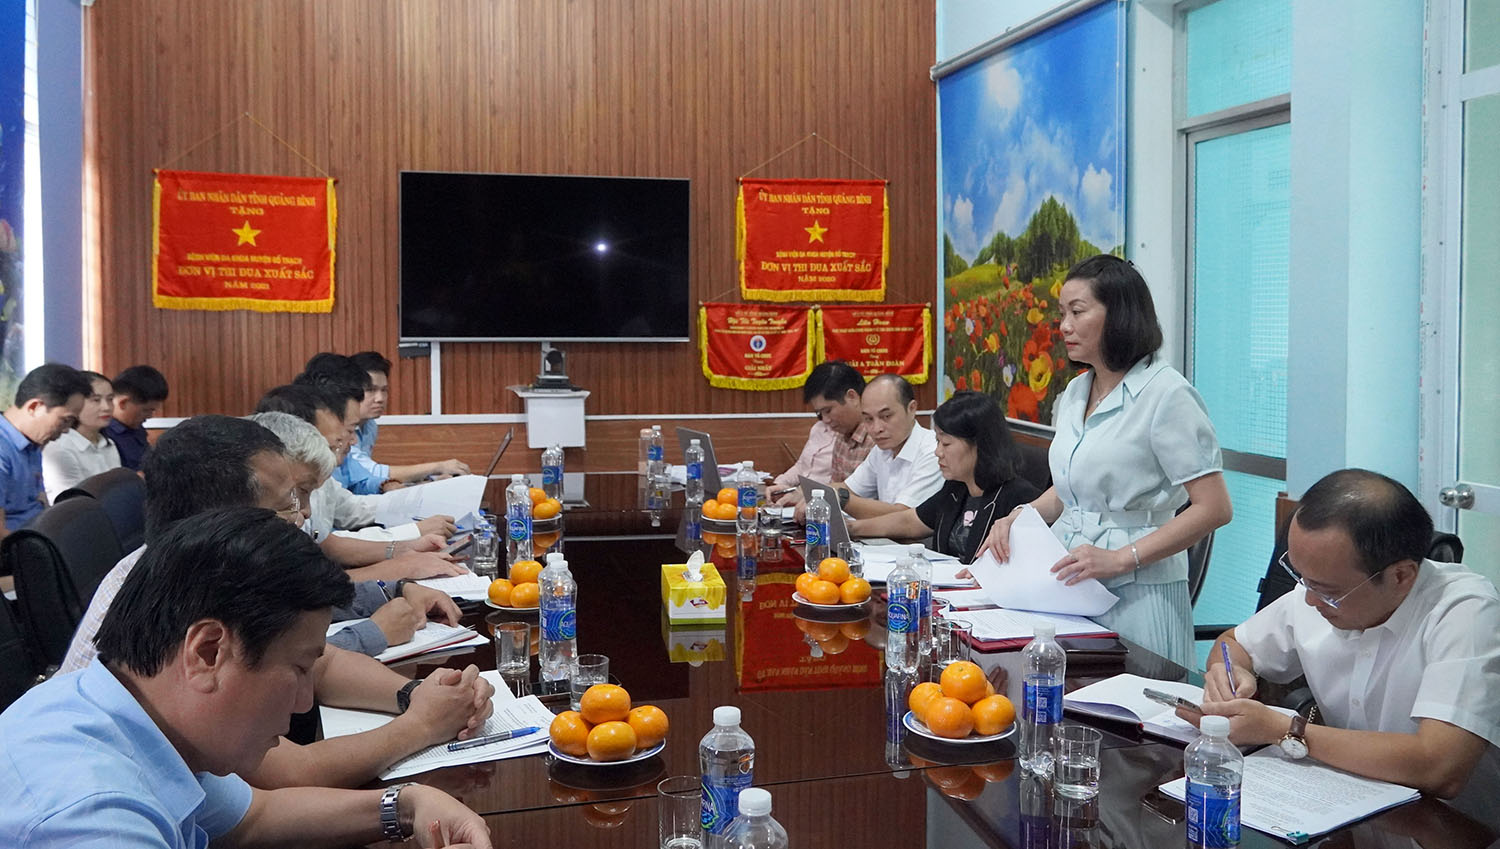 Đồng chí Nguyễn Minh Tâm, Phó trưởng đoàn chuyên trách Đoàn ĐBQH tỉnh phát biểu tại hội nghị